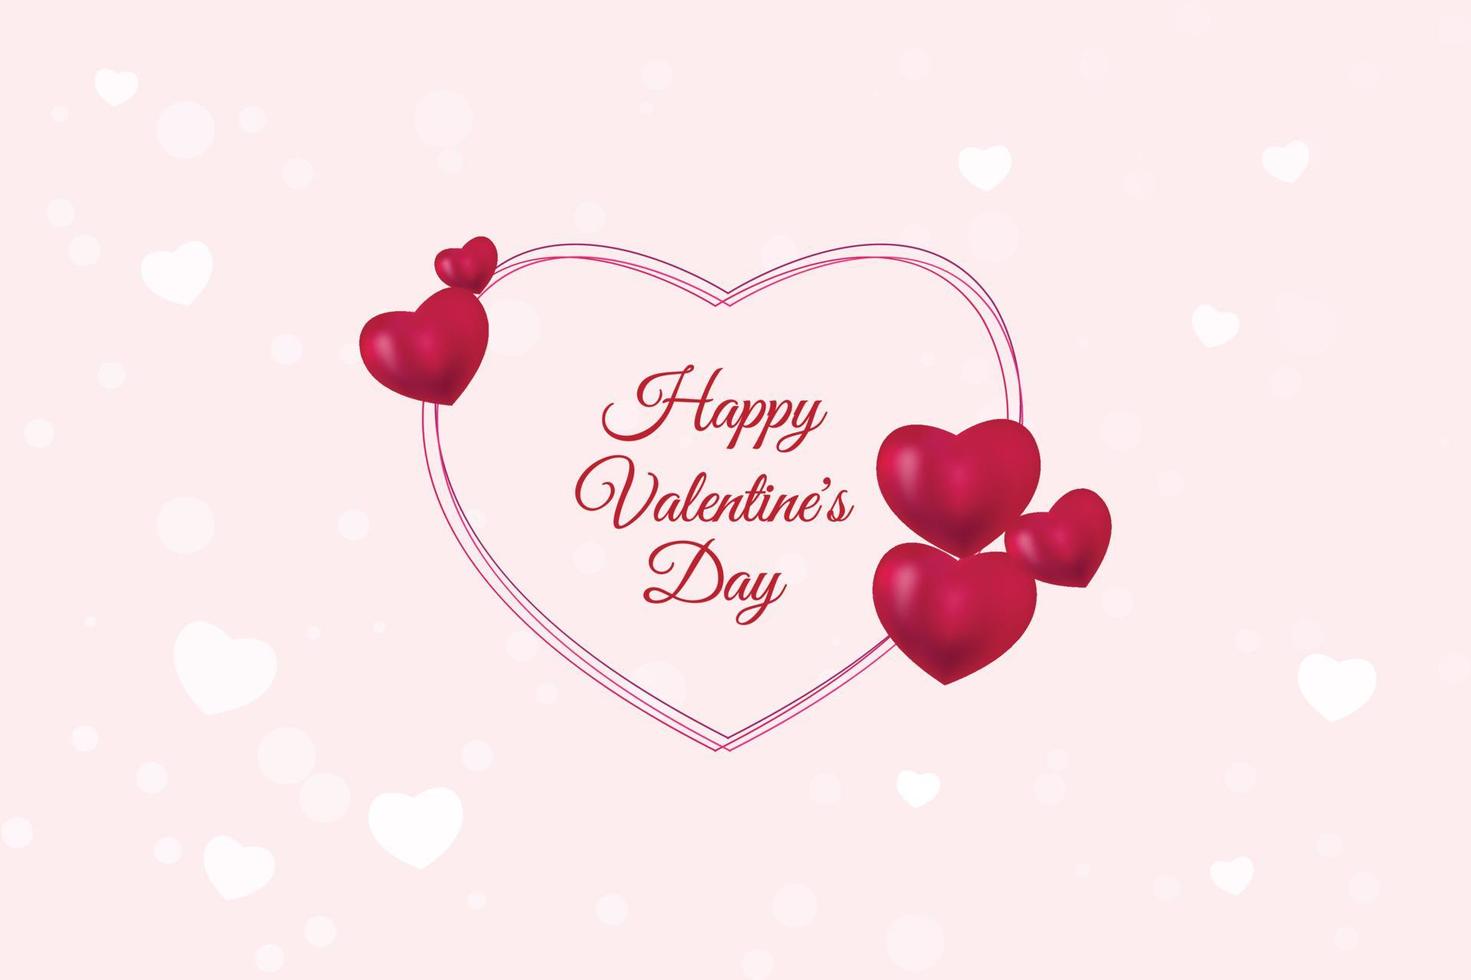 happy valentine's day lettrage cadre d'amour avec des coeurs 3d sur fond blanc, conception d'illustration vectorielle vecteur